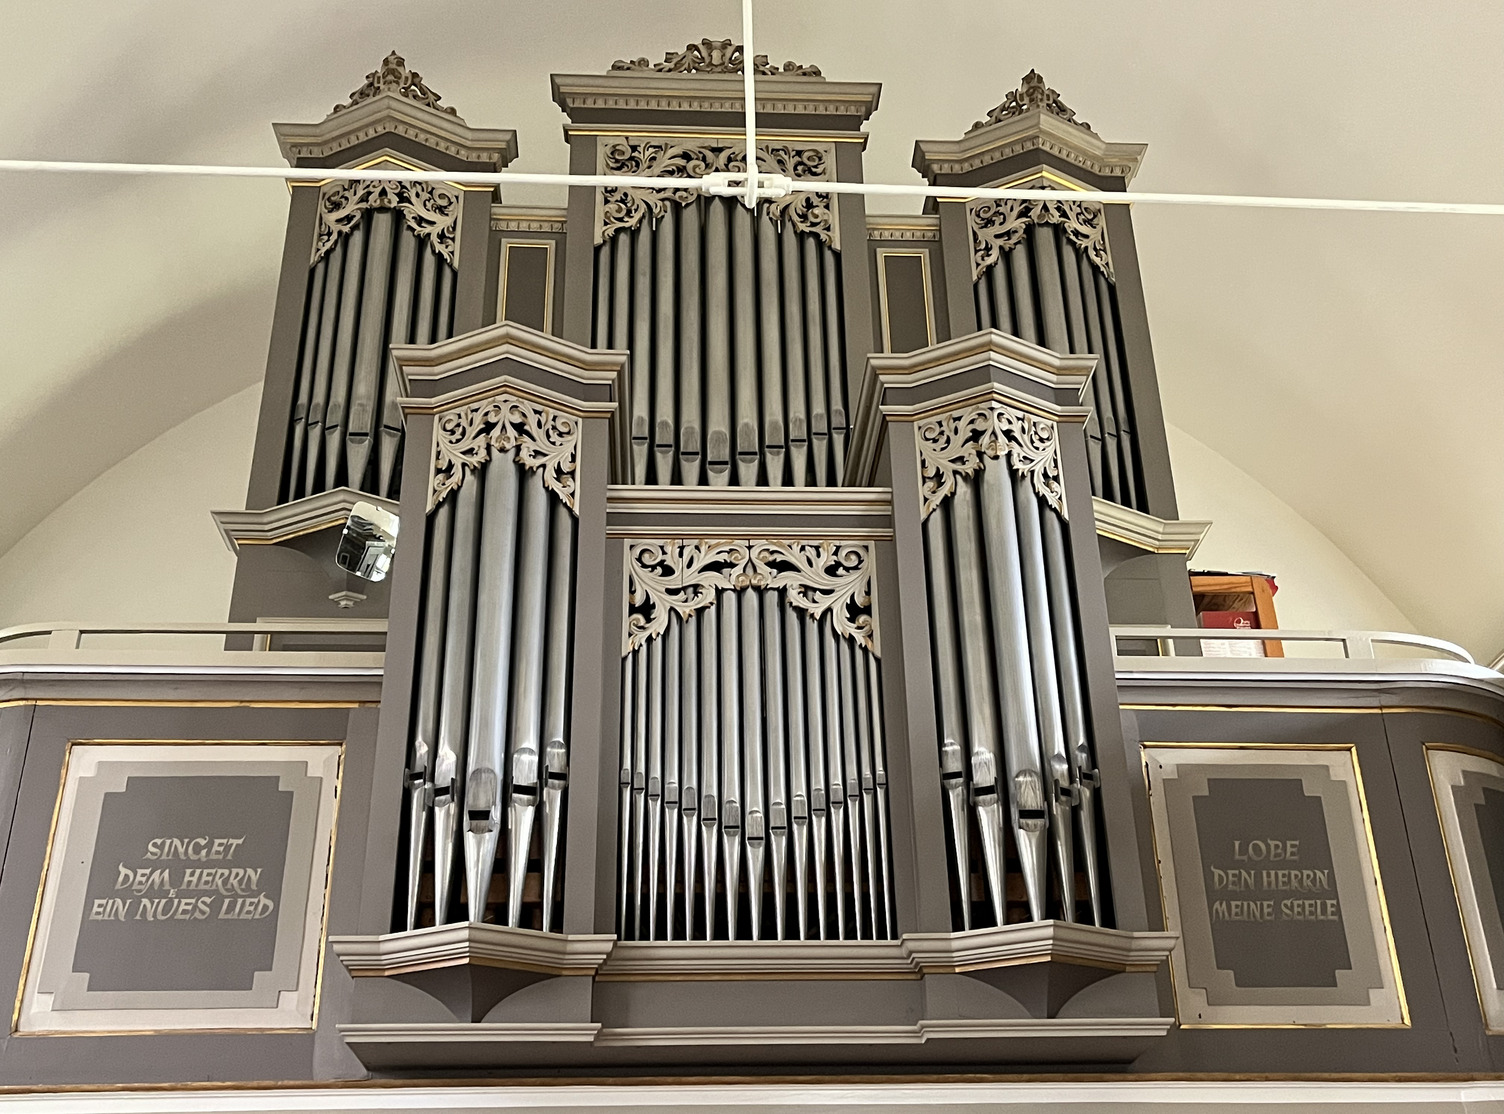 Ansicht der Orgel mt grauer Vertäfelung. Zwei Schriften sind neben der Orgel angebracht: "Singet dem Herrn ein nües Lied" und "Lobe den Herrn meine Seele"